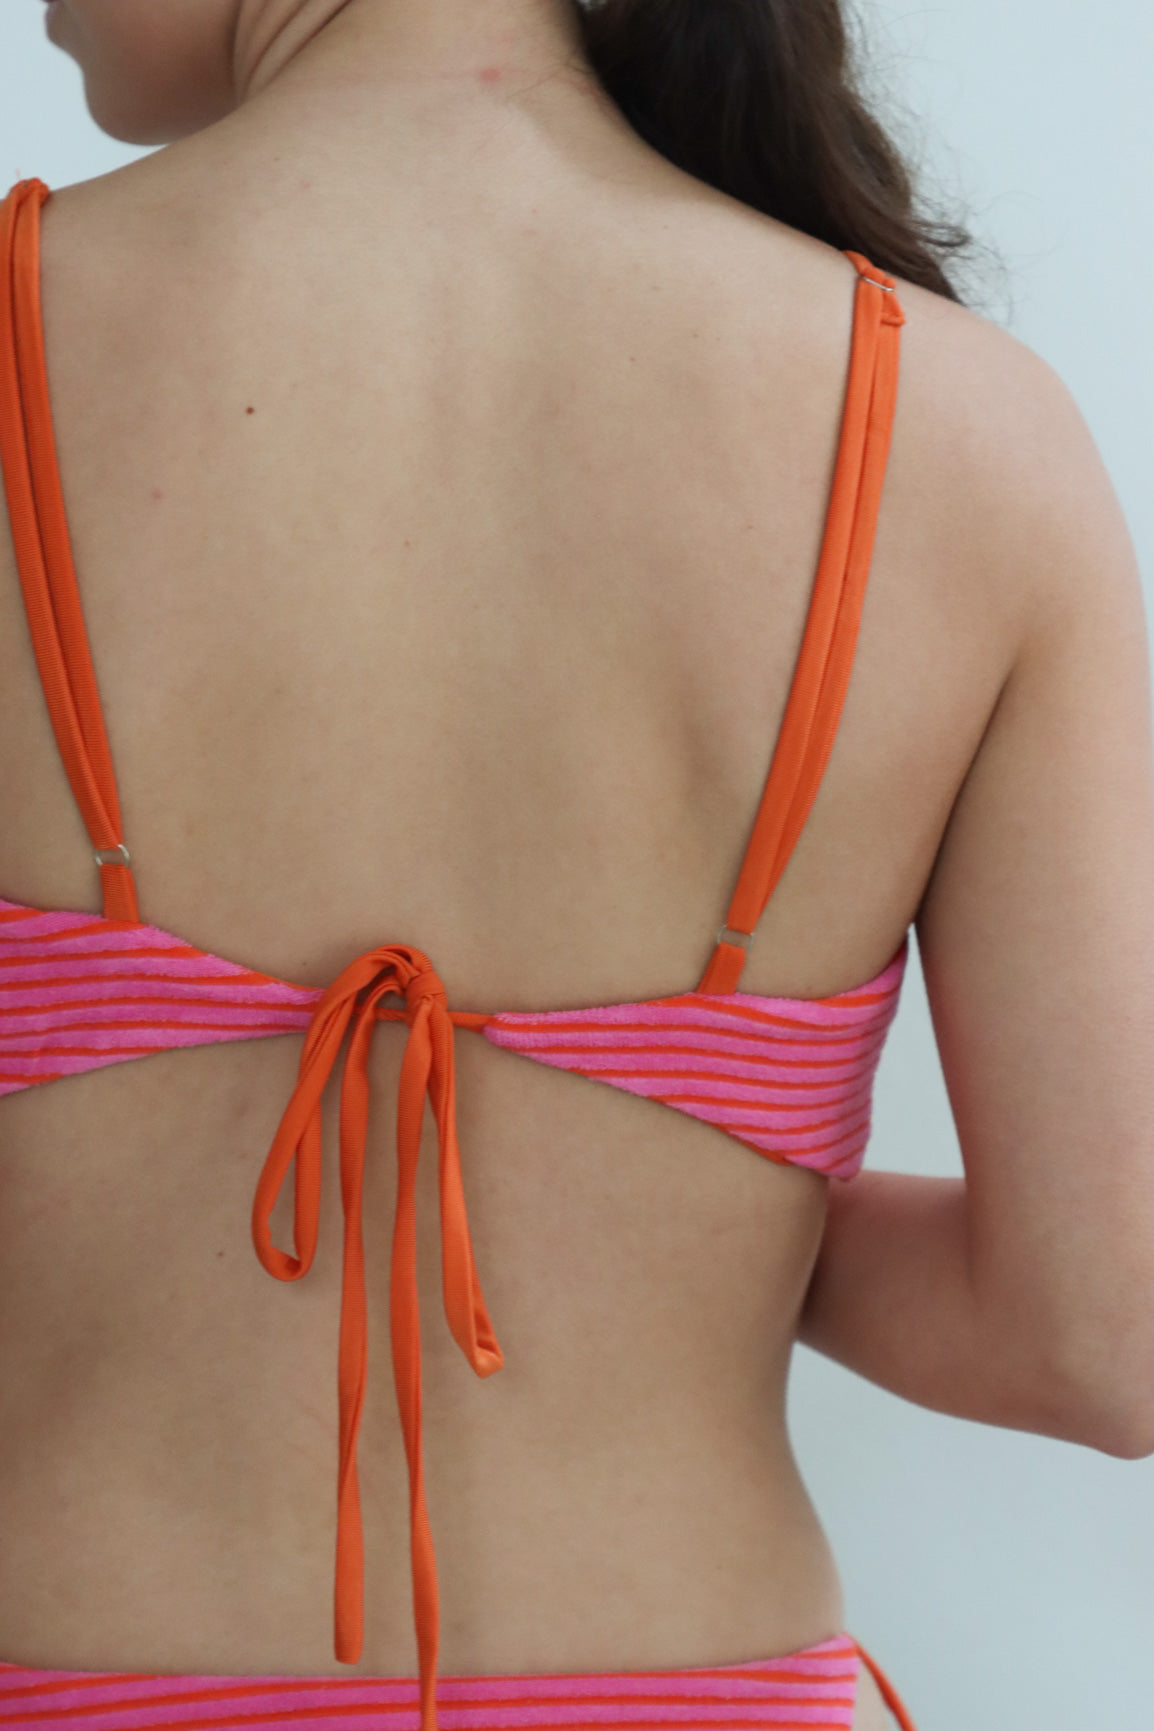 girl wearing hot pink terry cloth bikini